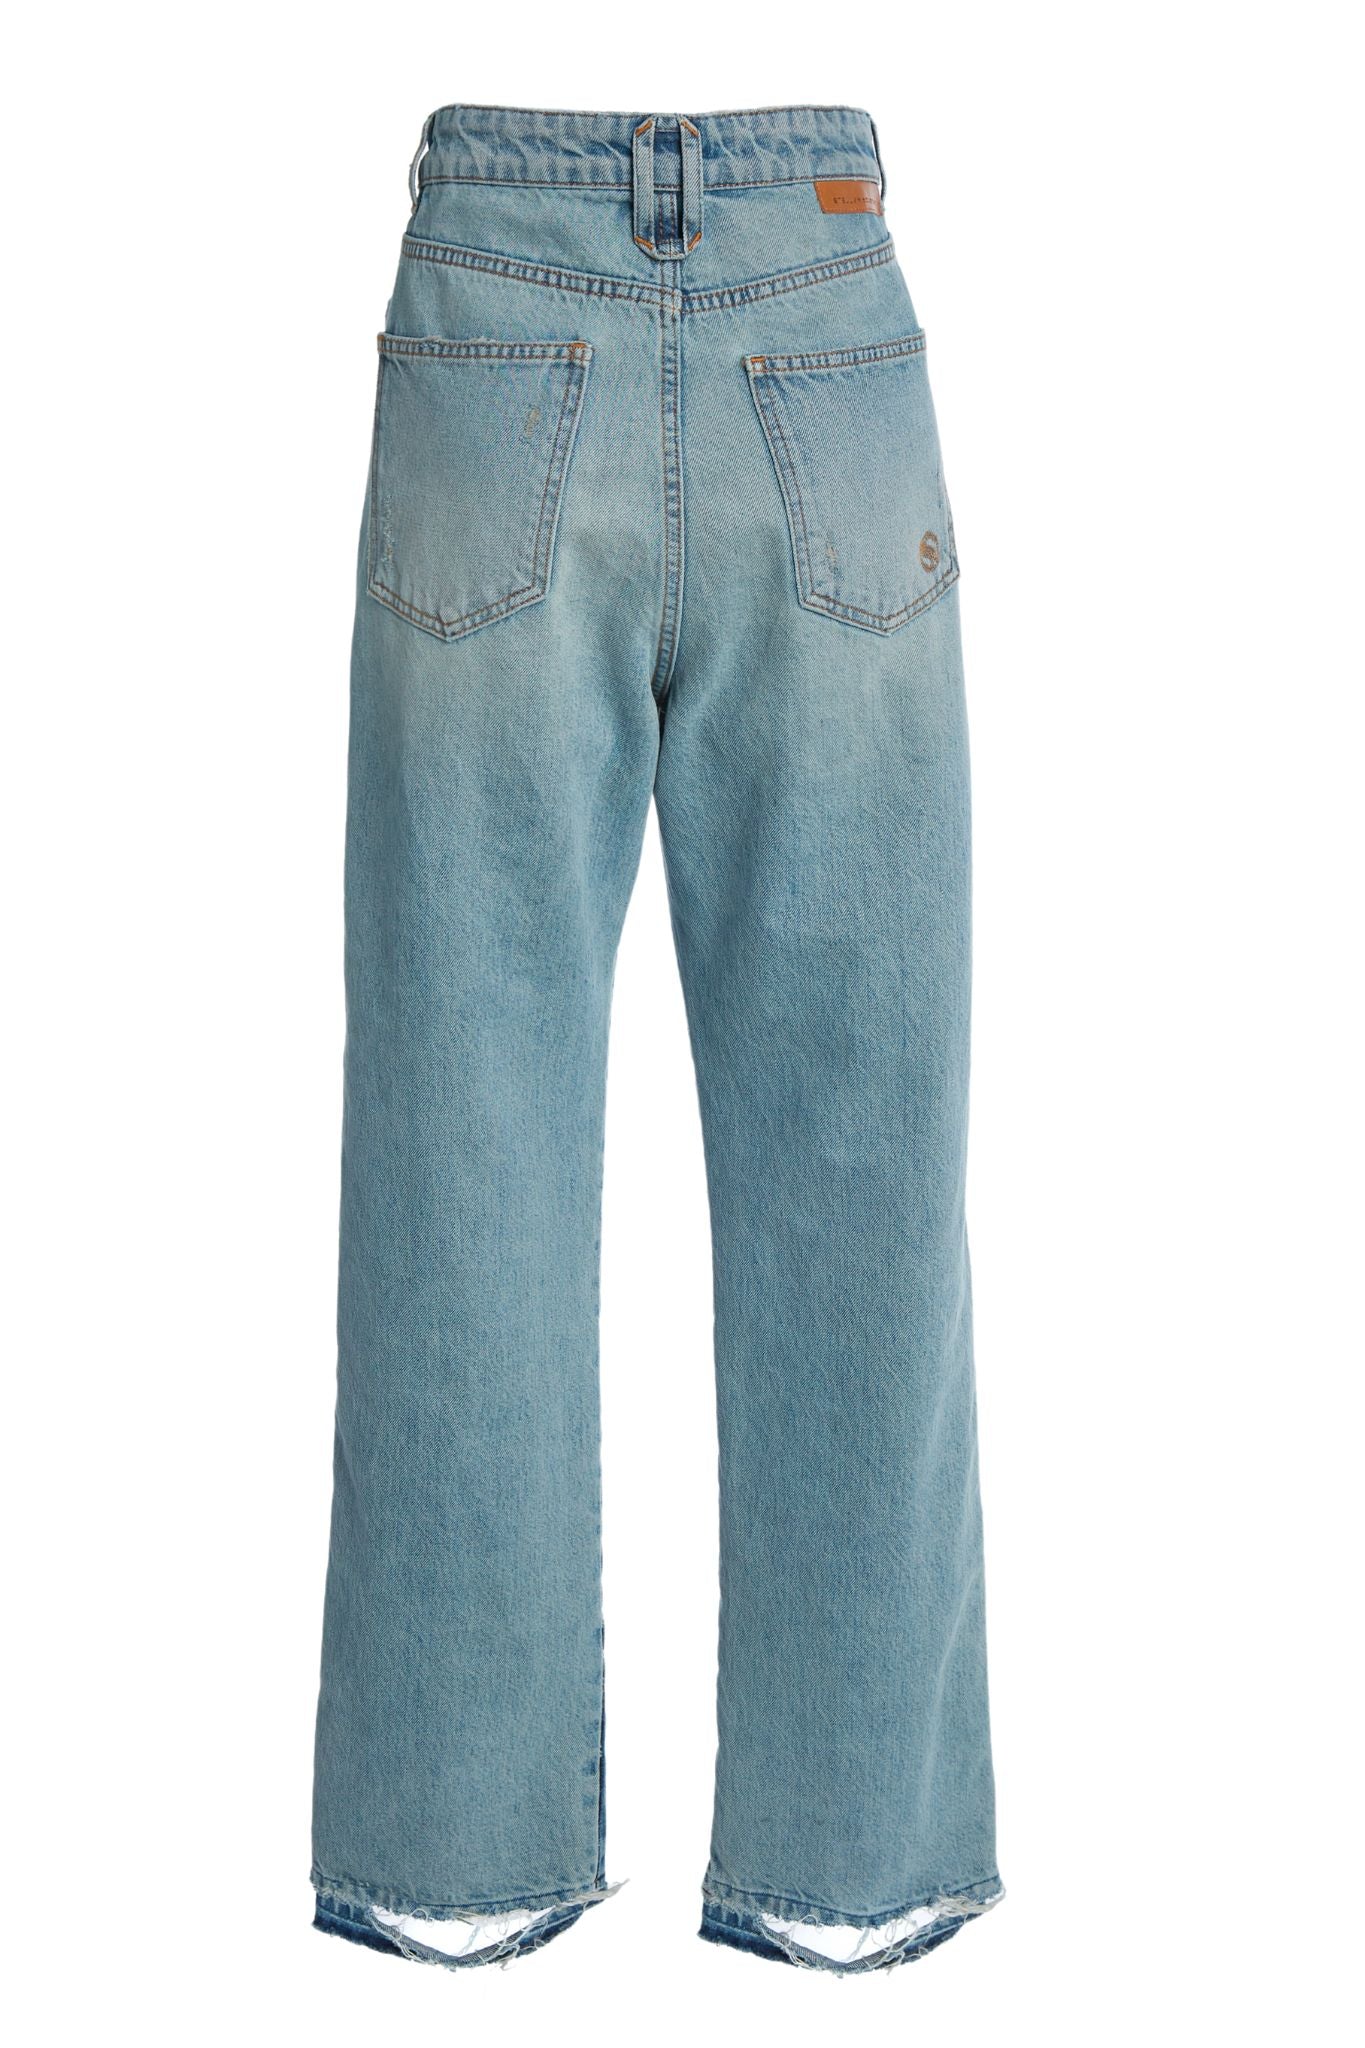 Stella McCartney Vintage Chap Jeans